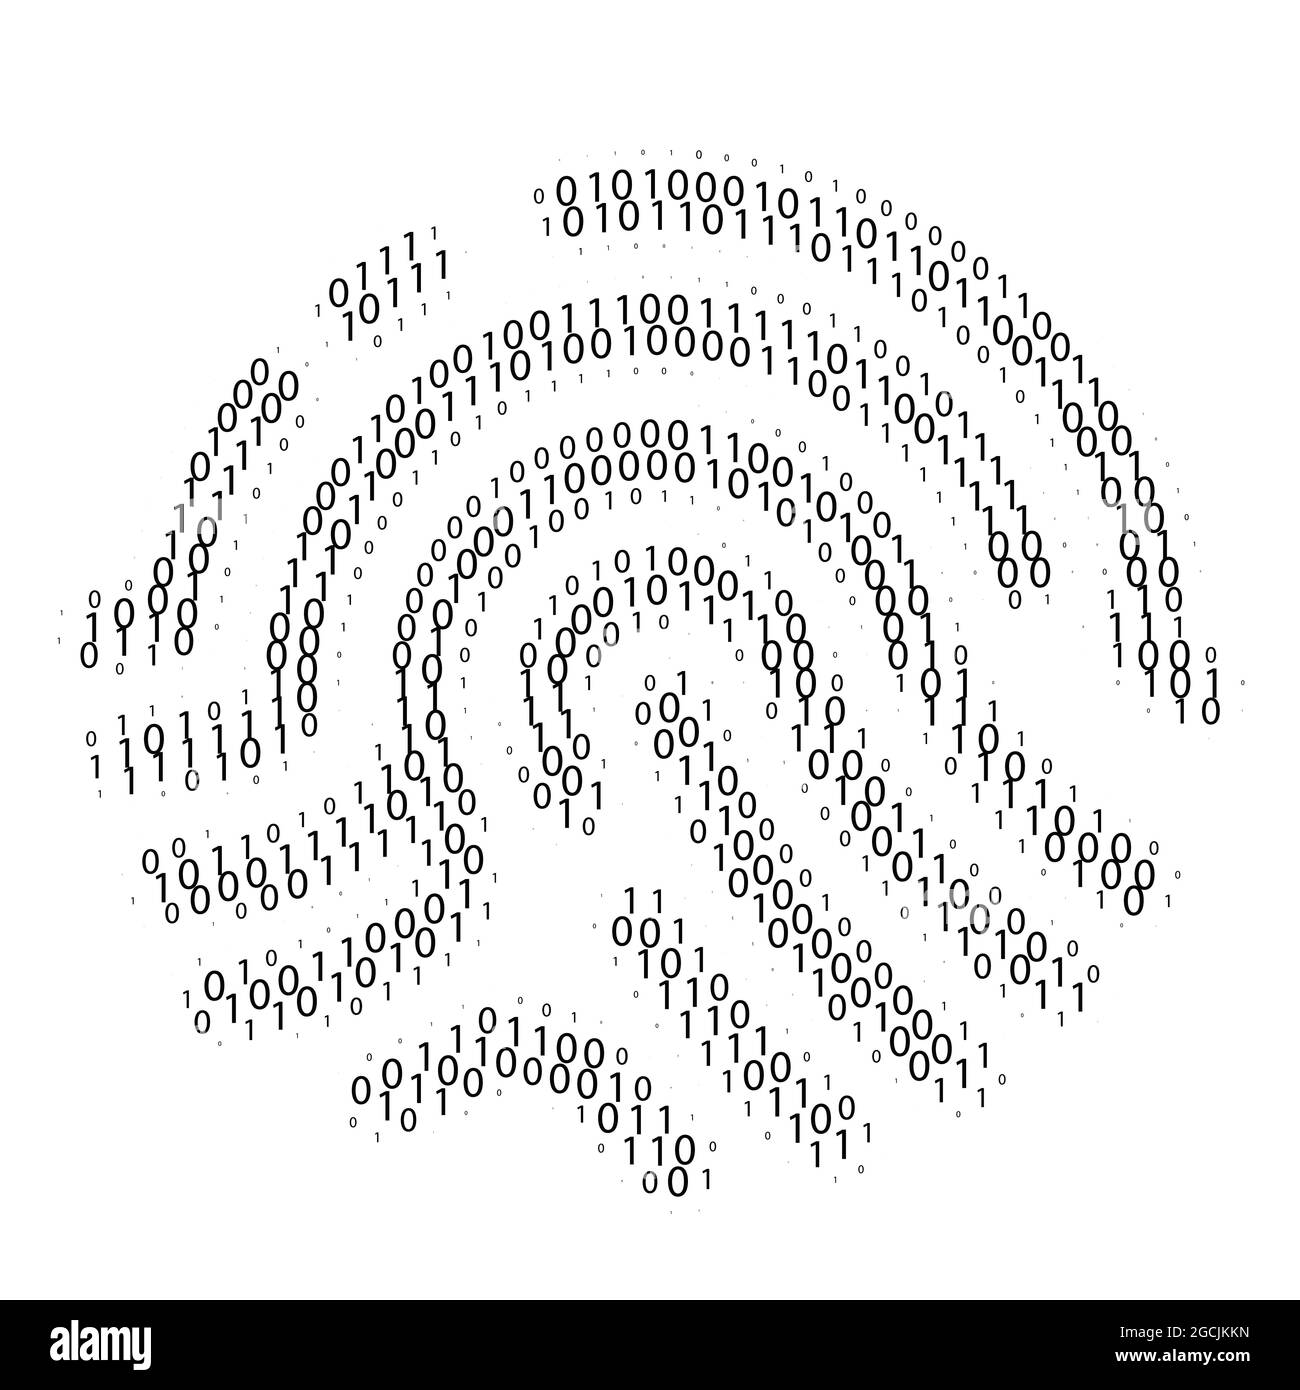 Codice binario impronta digitale. Accesso o verifica dei dati. Identificazione digitale. Illustrazione vettoriale Illustrazione Vettoriale